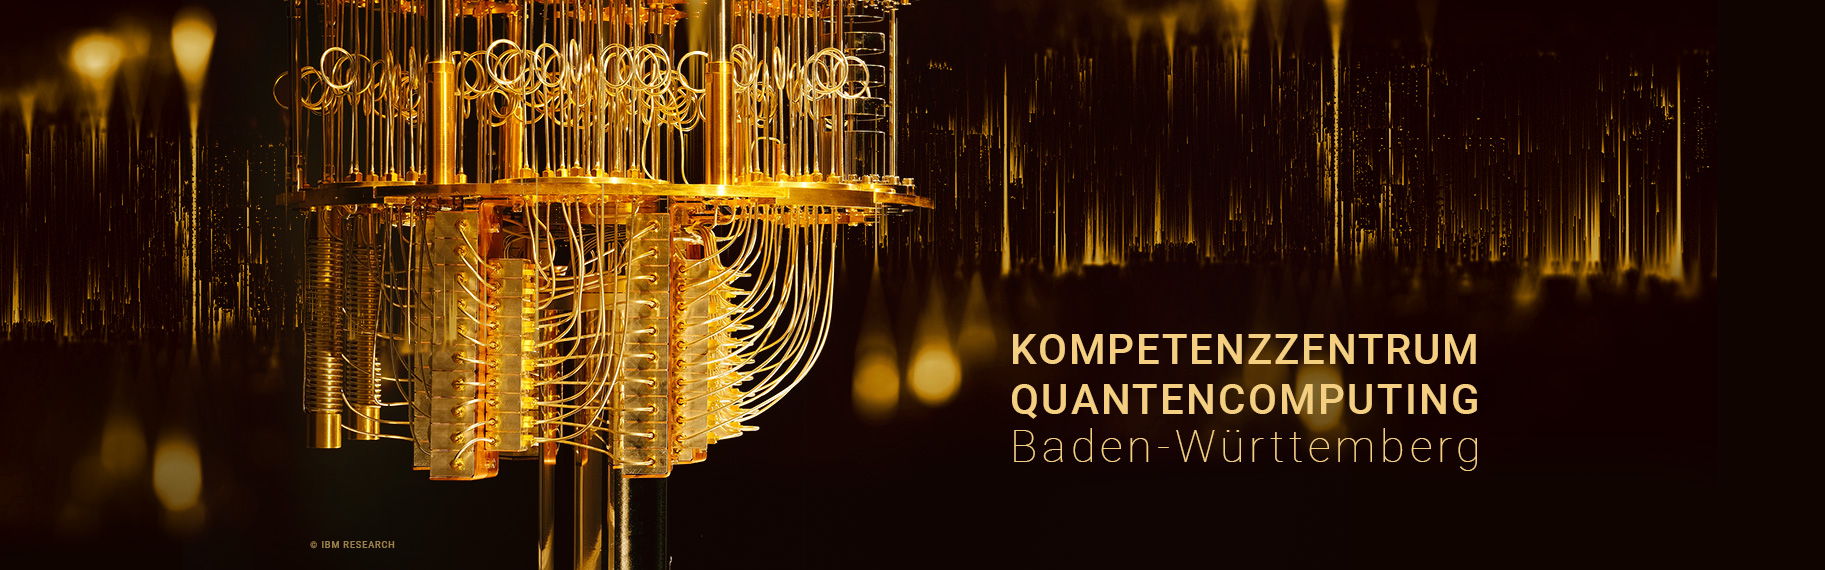 IBM Quantencomputer goldorange auf schwarzem Hintergrund mit Schriftzug "Fraunhofer Kompetenzzentrum Quantencomputing Baden-Württemberg"